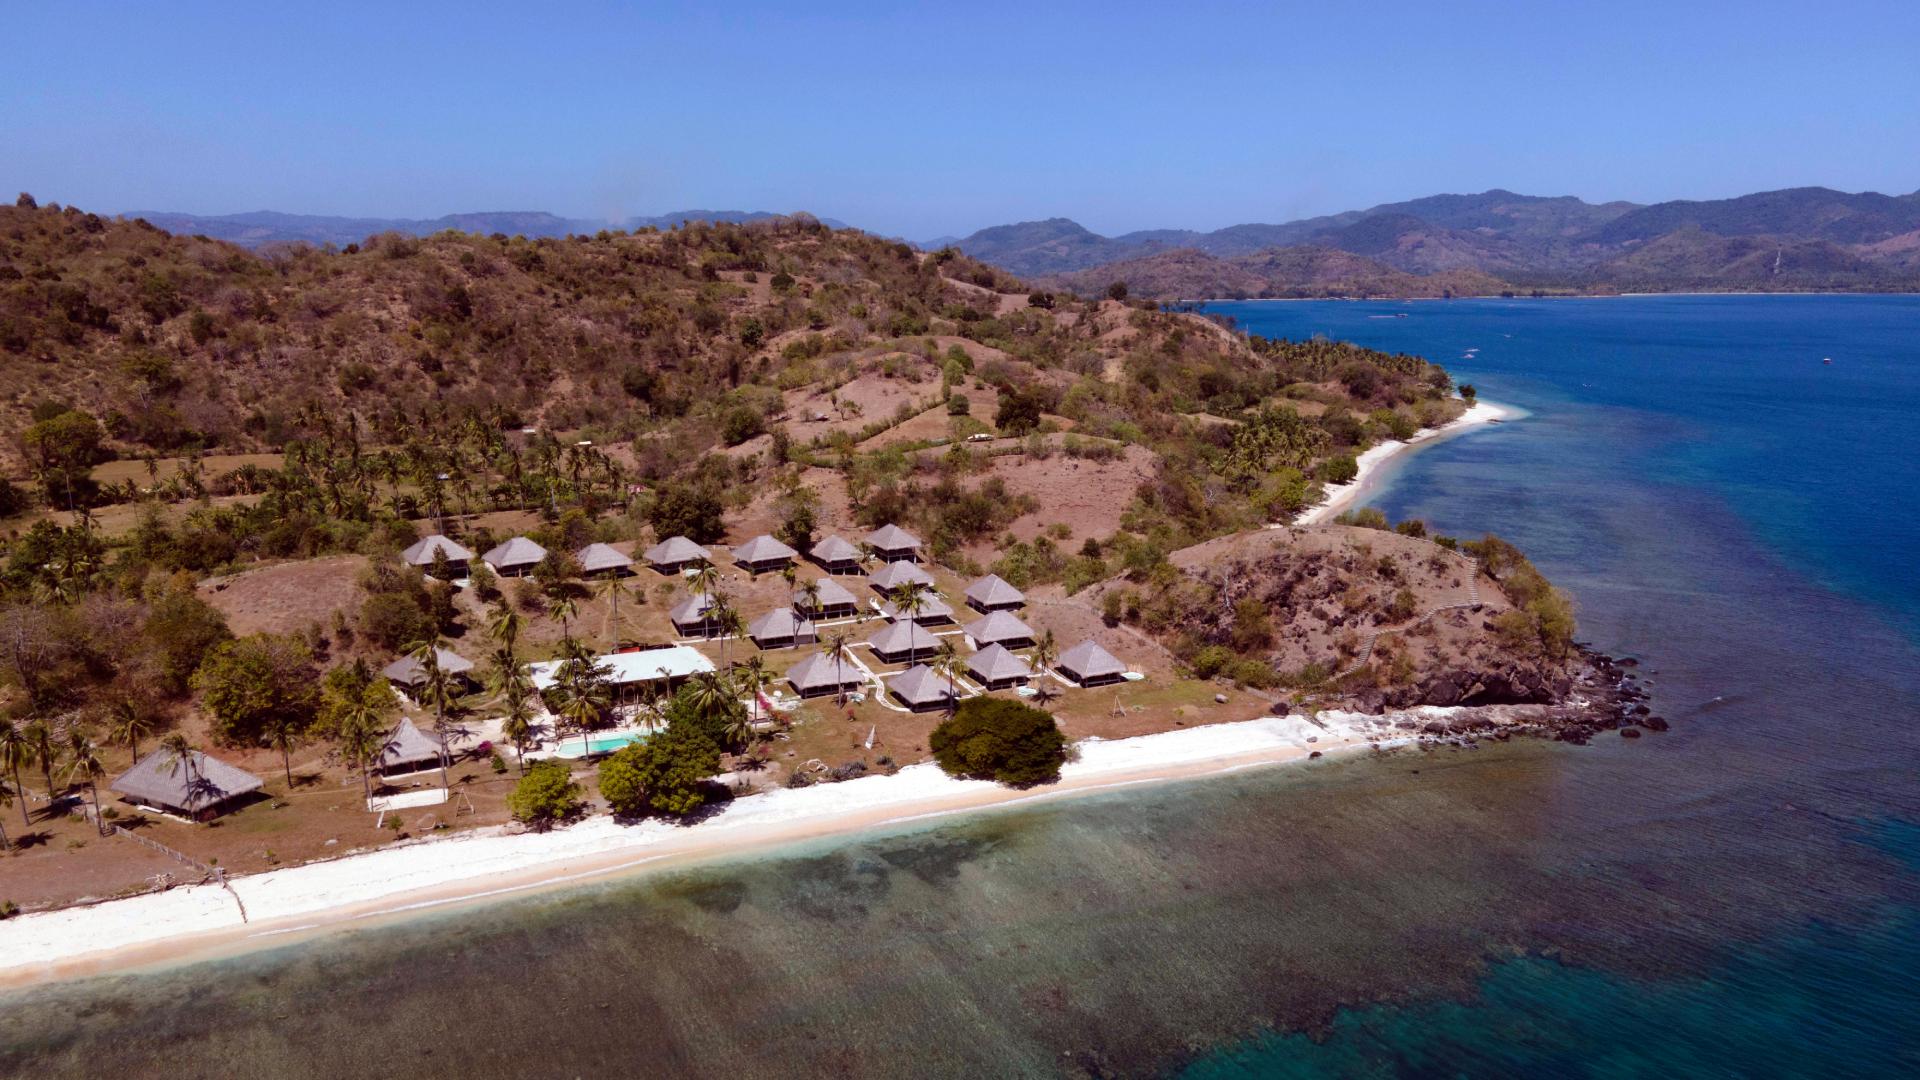 Hôtel Bleu Mathis sur l'île de Gili Asahan.